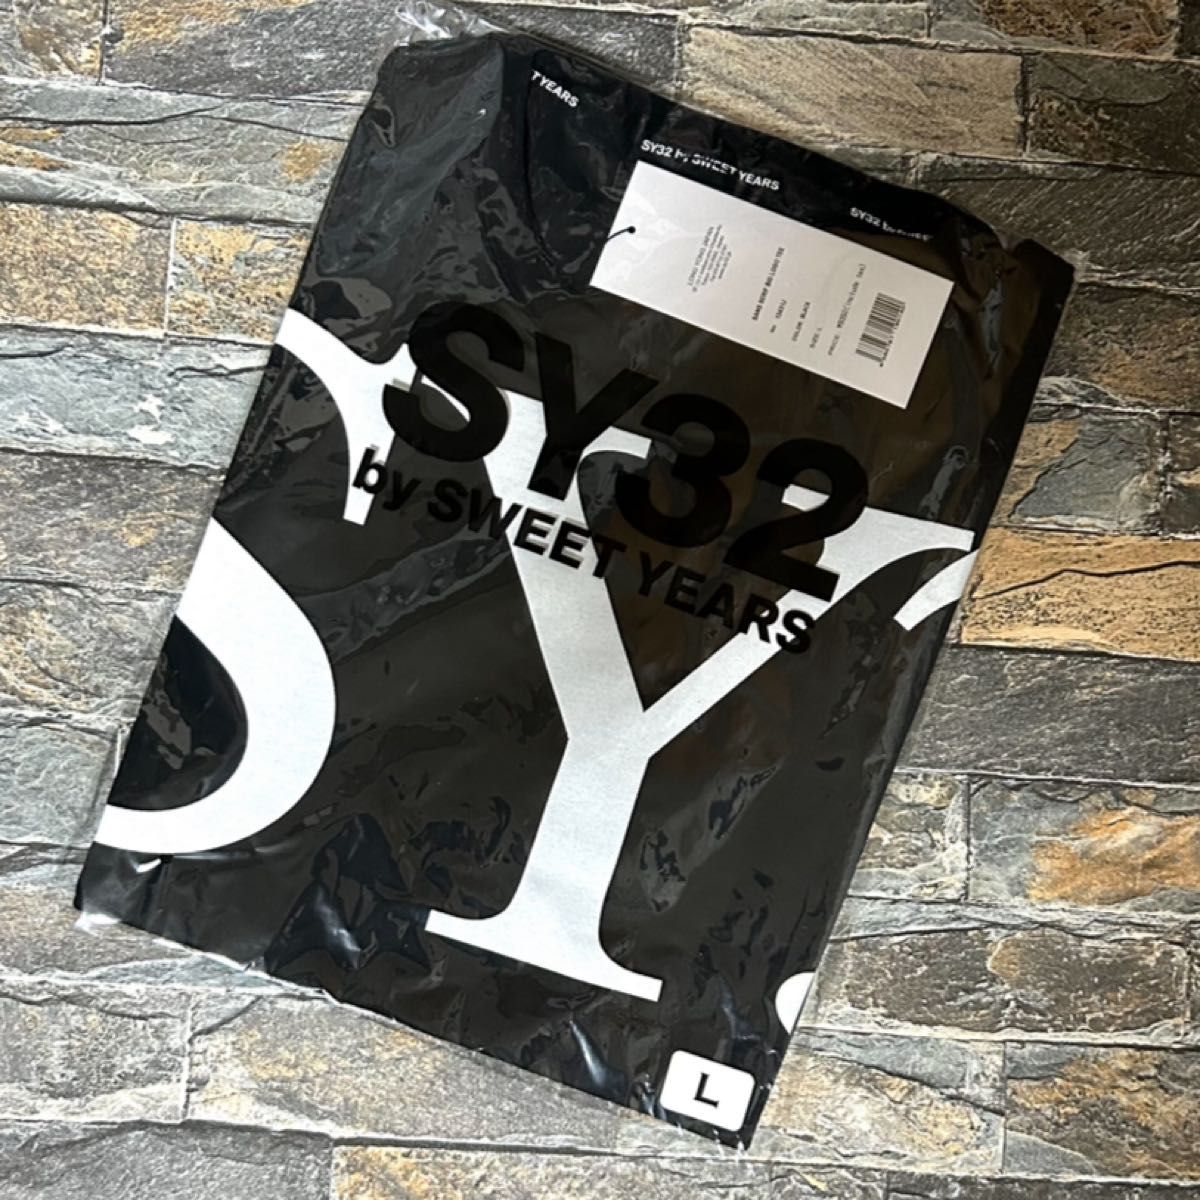 【新品】SY32 bysweetyears／クルーネック ビッグロゴ Tシャツ カットソー Lサイズ